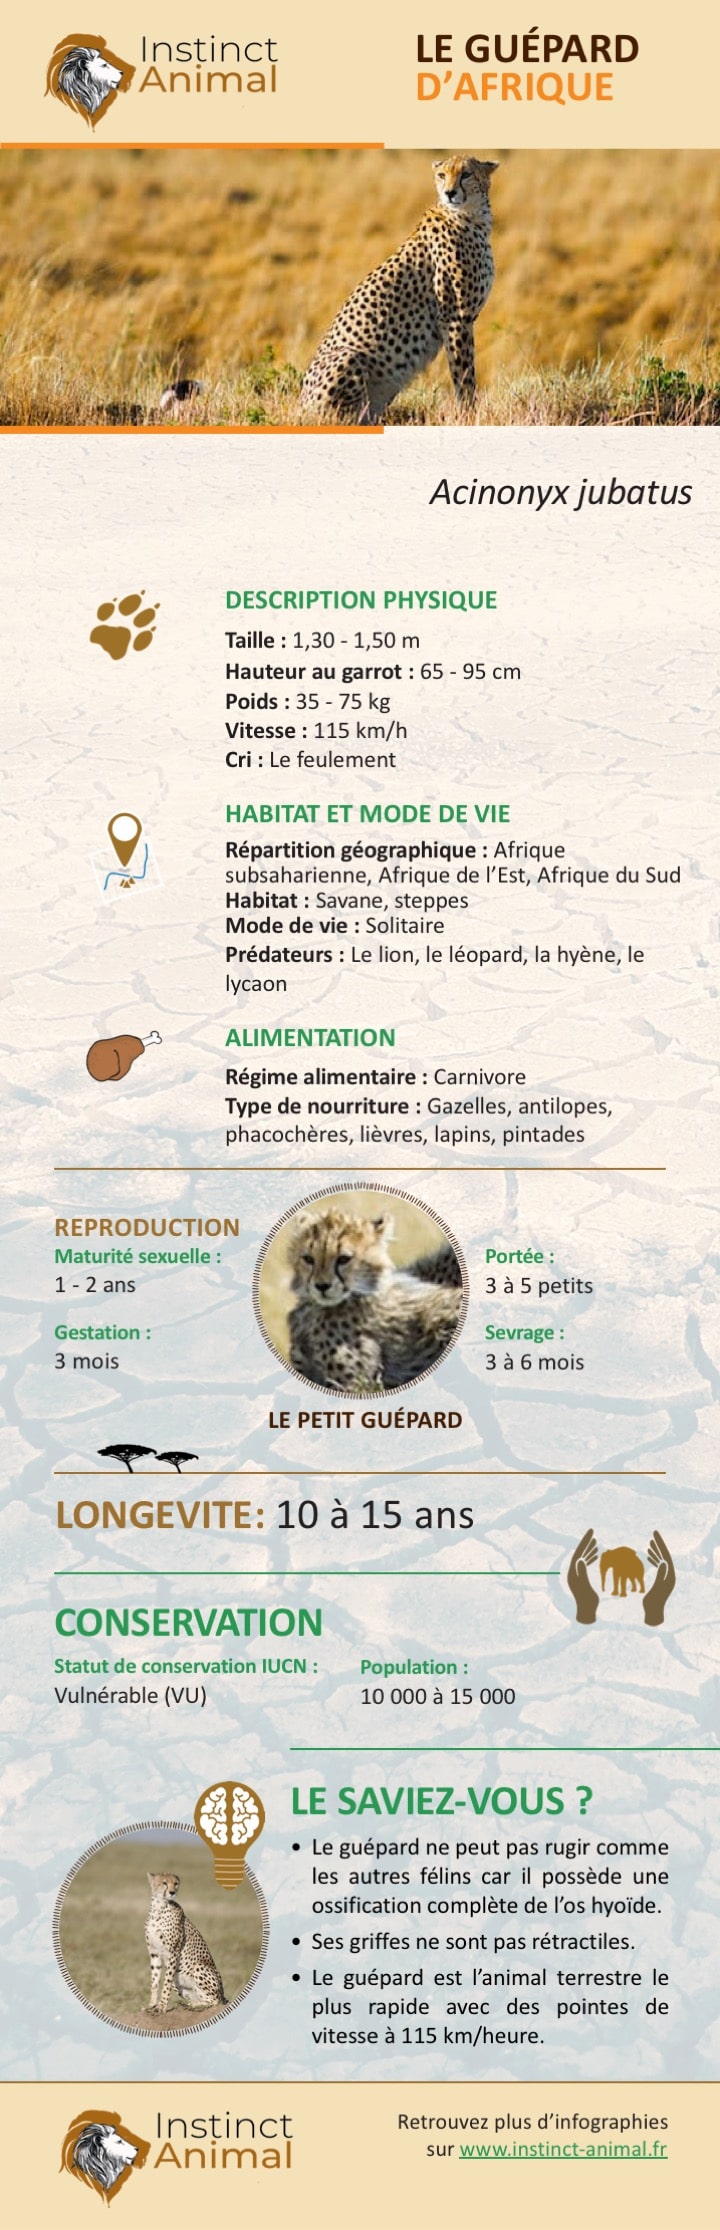 Le guépard - Infographie - Instinct Animal